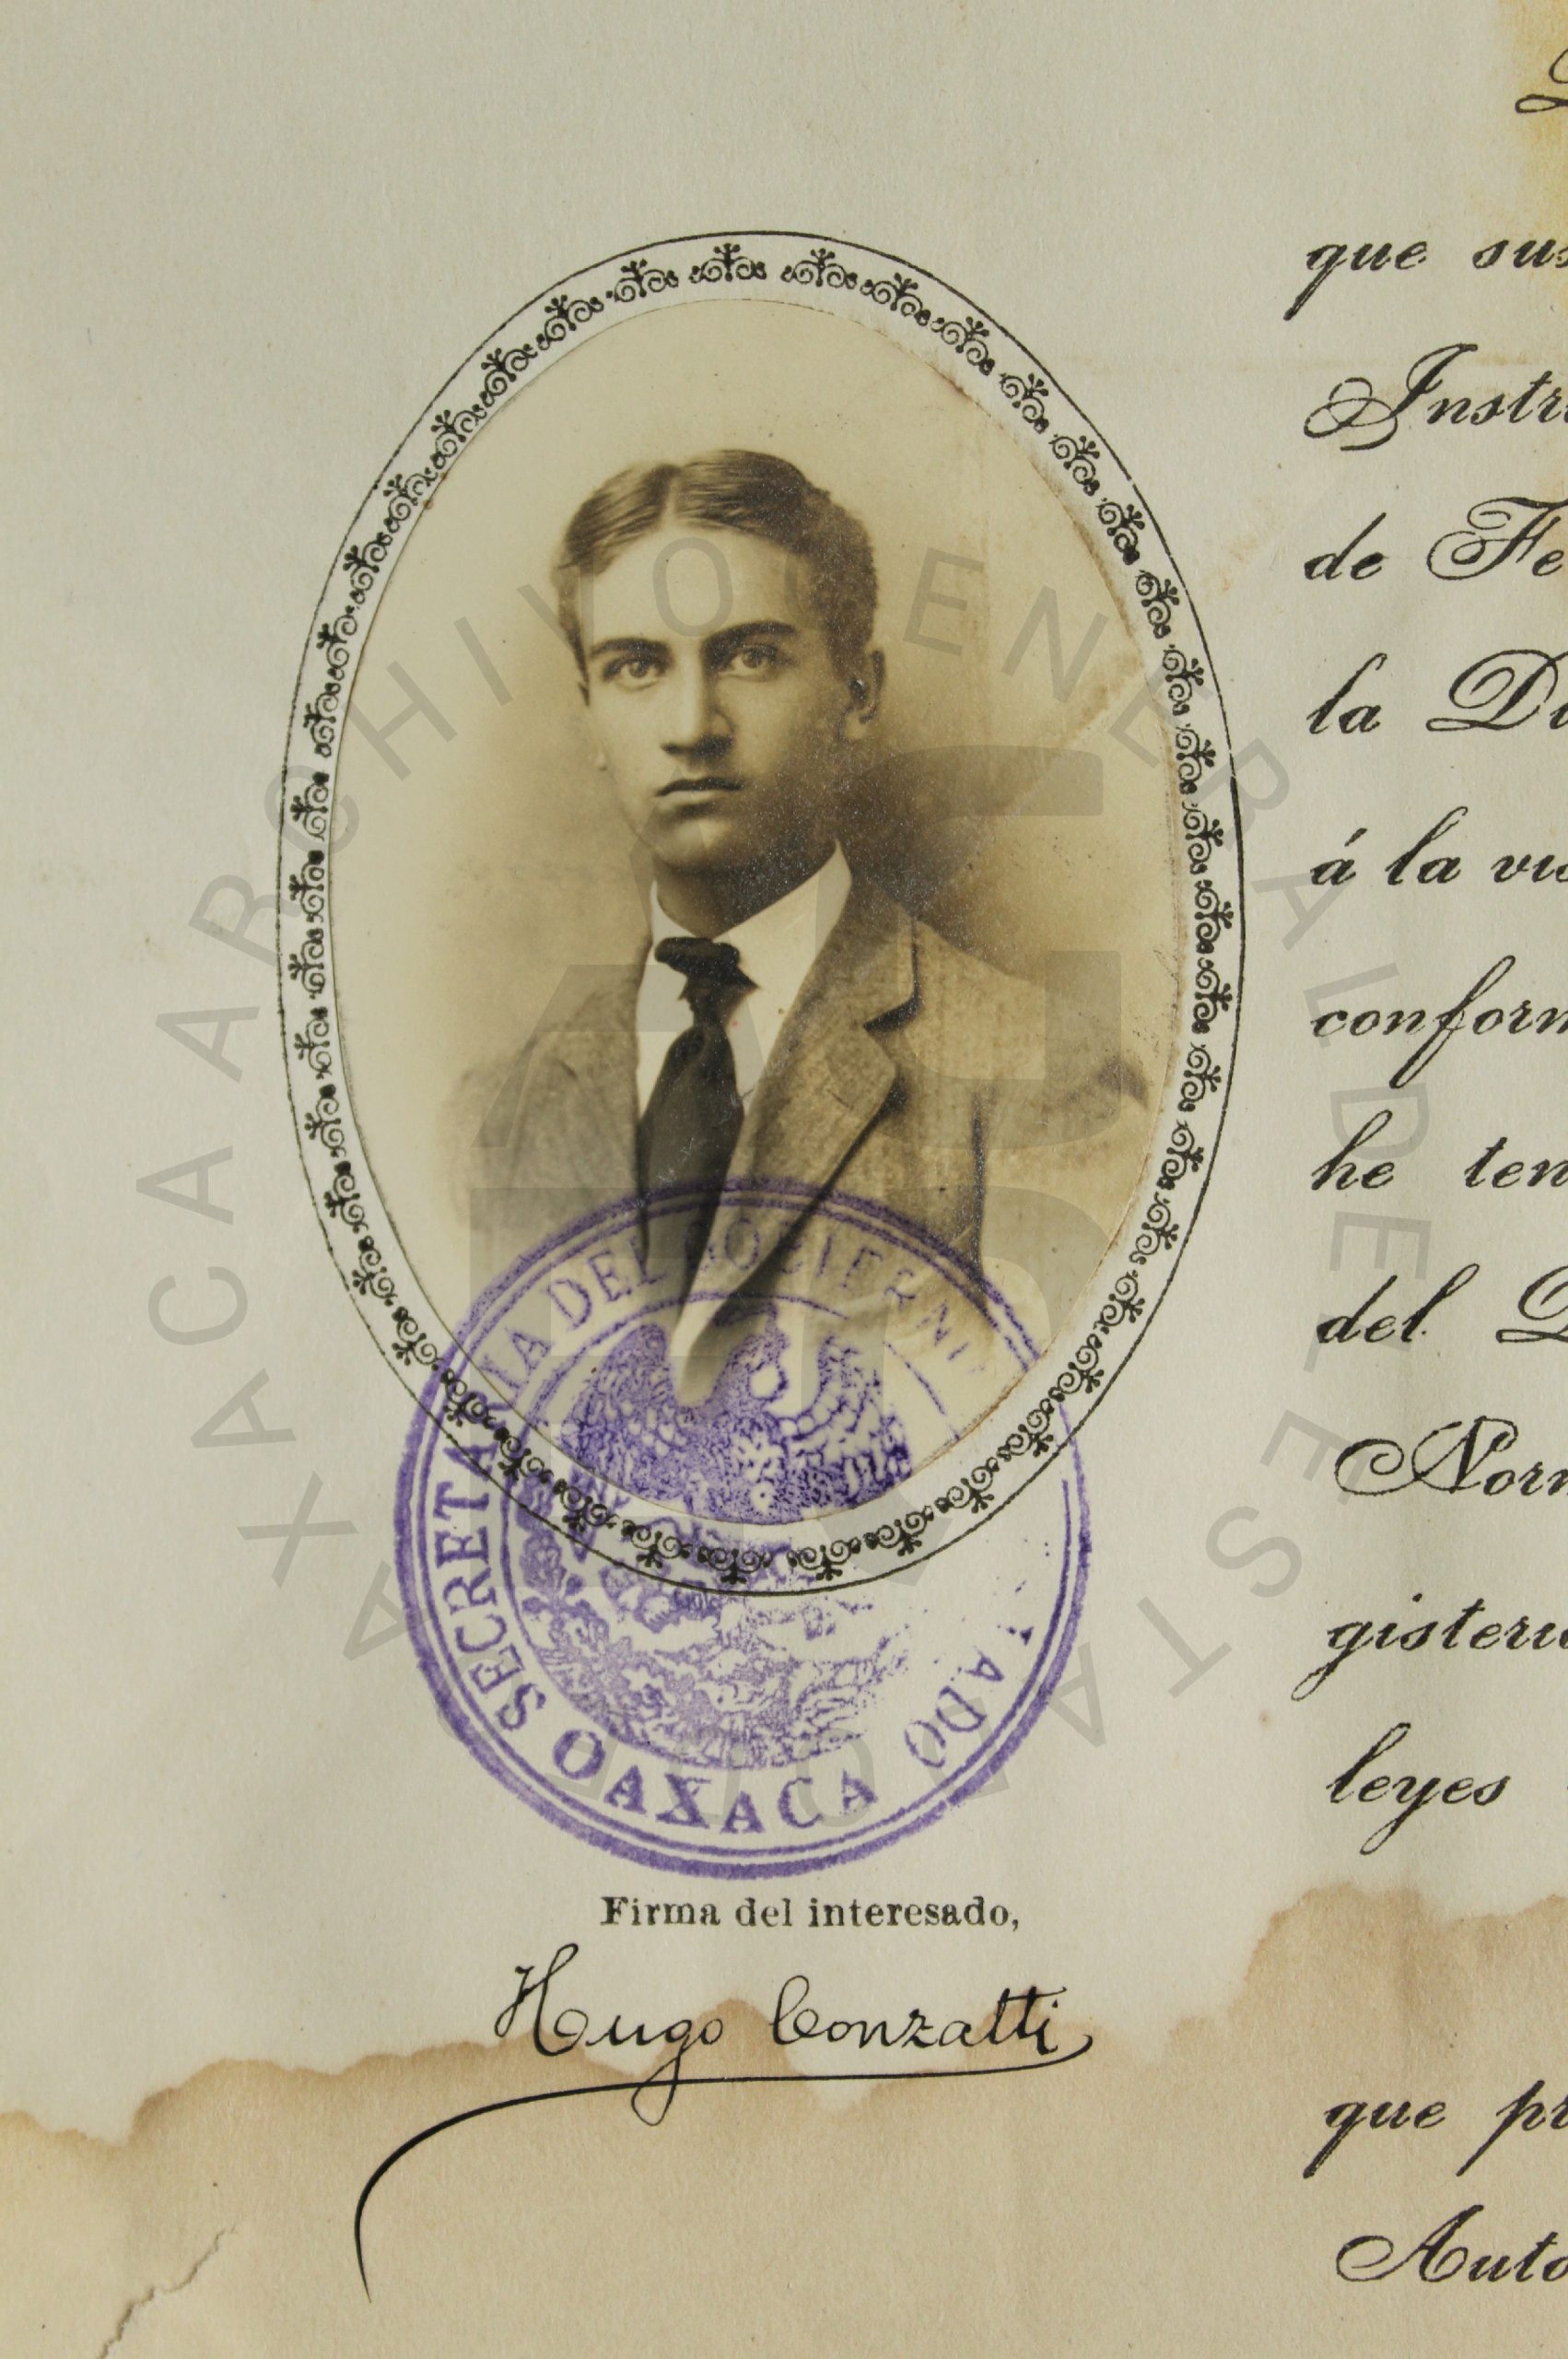 TÍTULOS PROFESIONALES DE LA ESCUELA NORMAL DE LA CIUDAD DE OAXACA EN 1912 Y LA IGUALDAD DE GÉNERO.